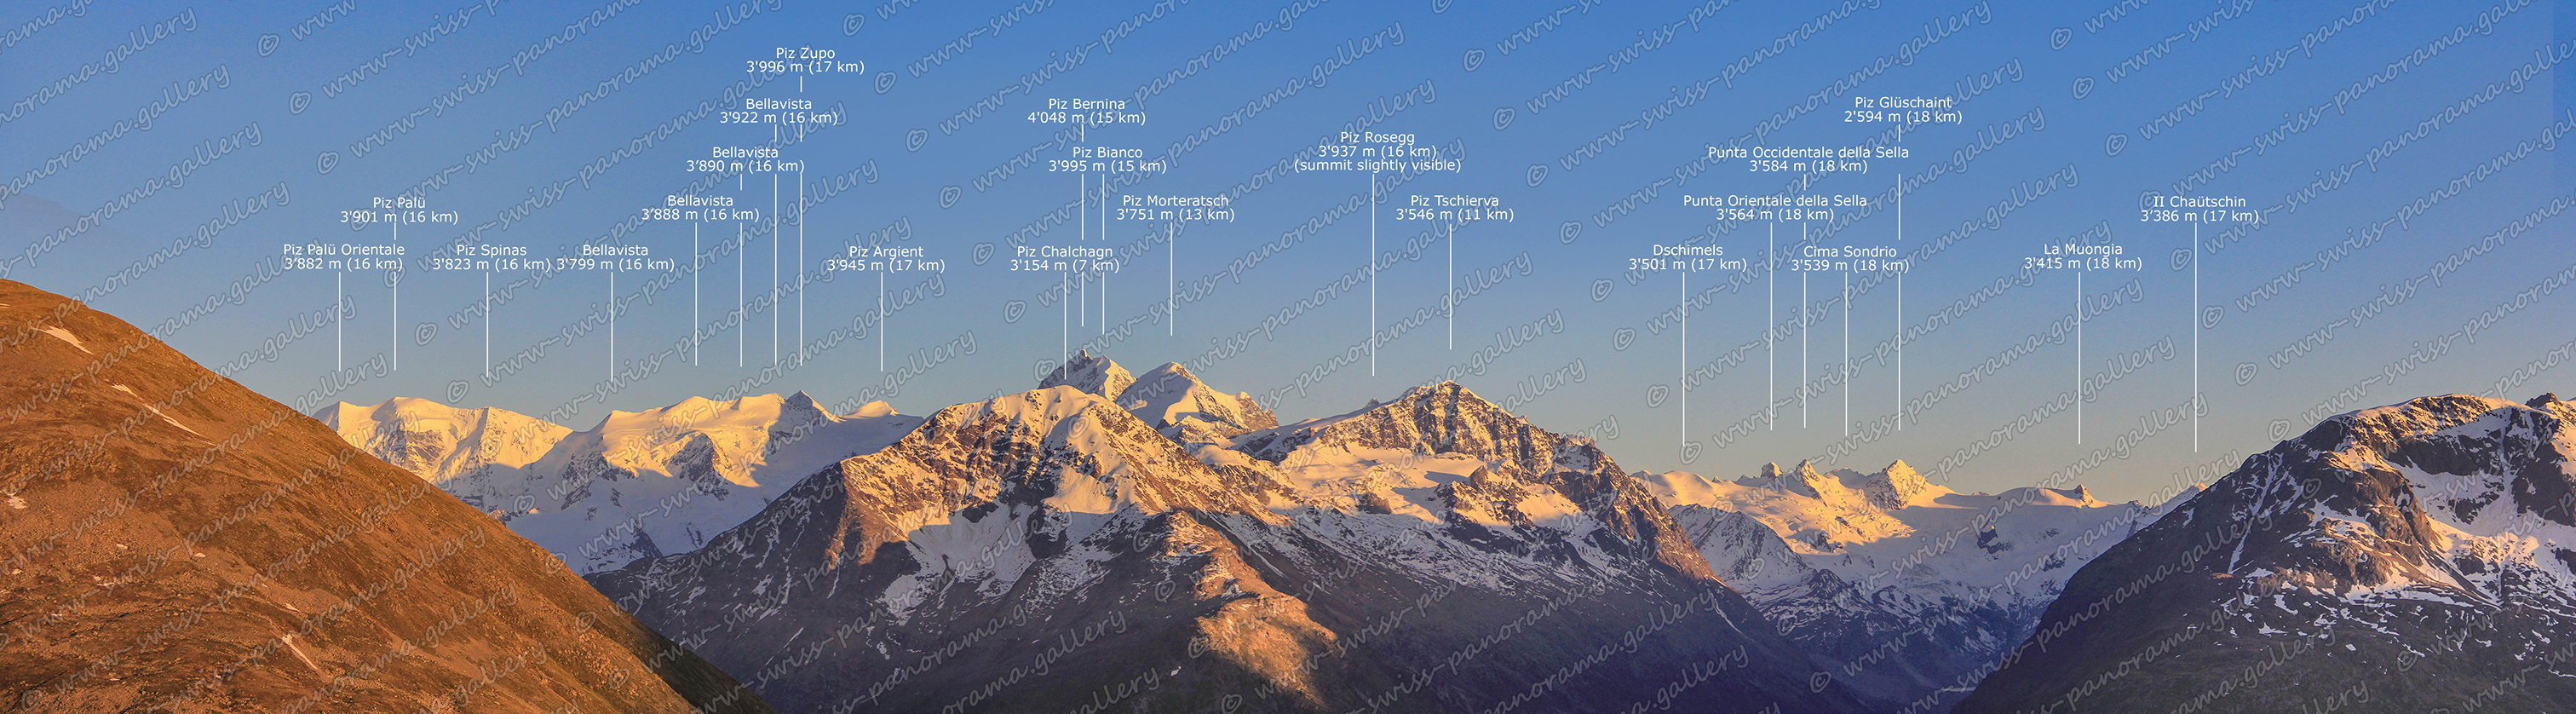 Switzerland Muottas Muragl panorama